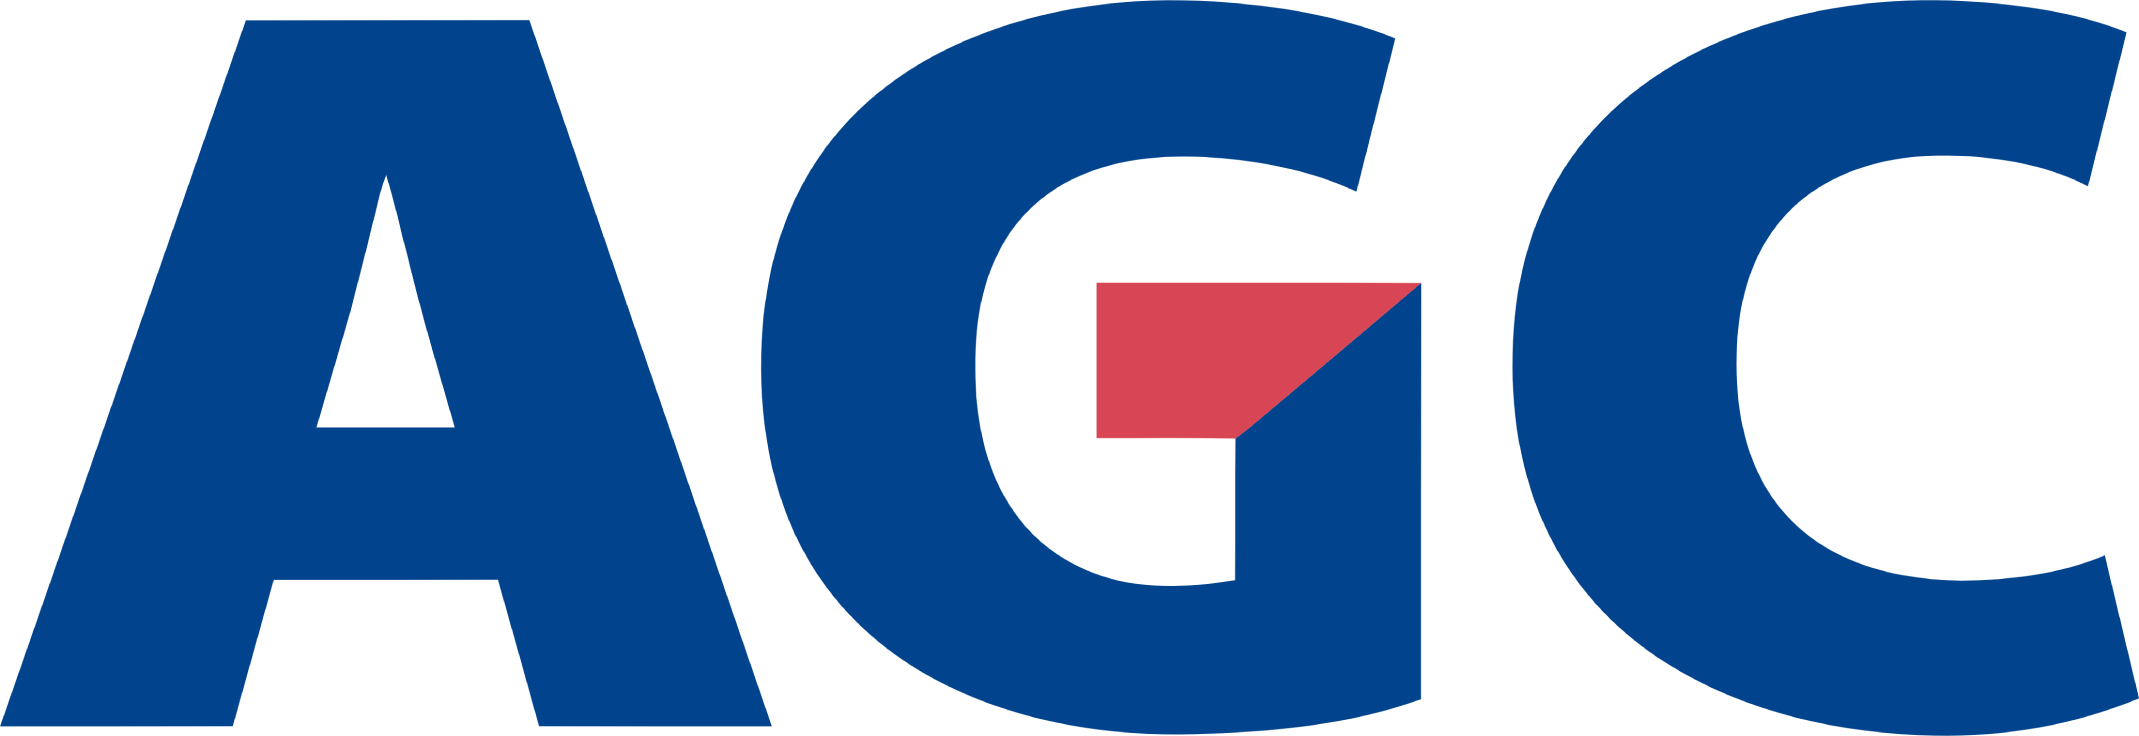 AGC logo (transparent PNG)